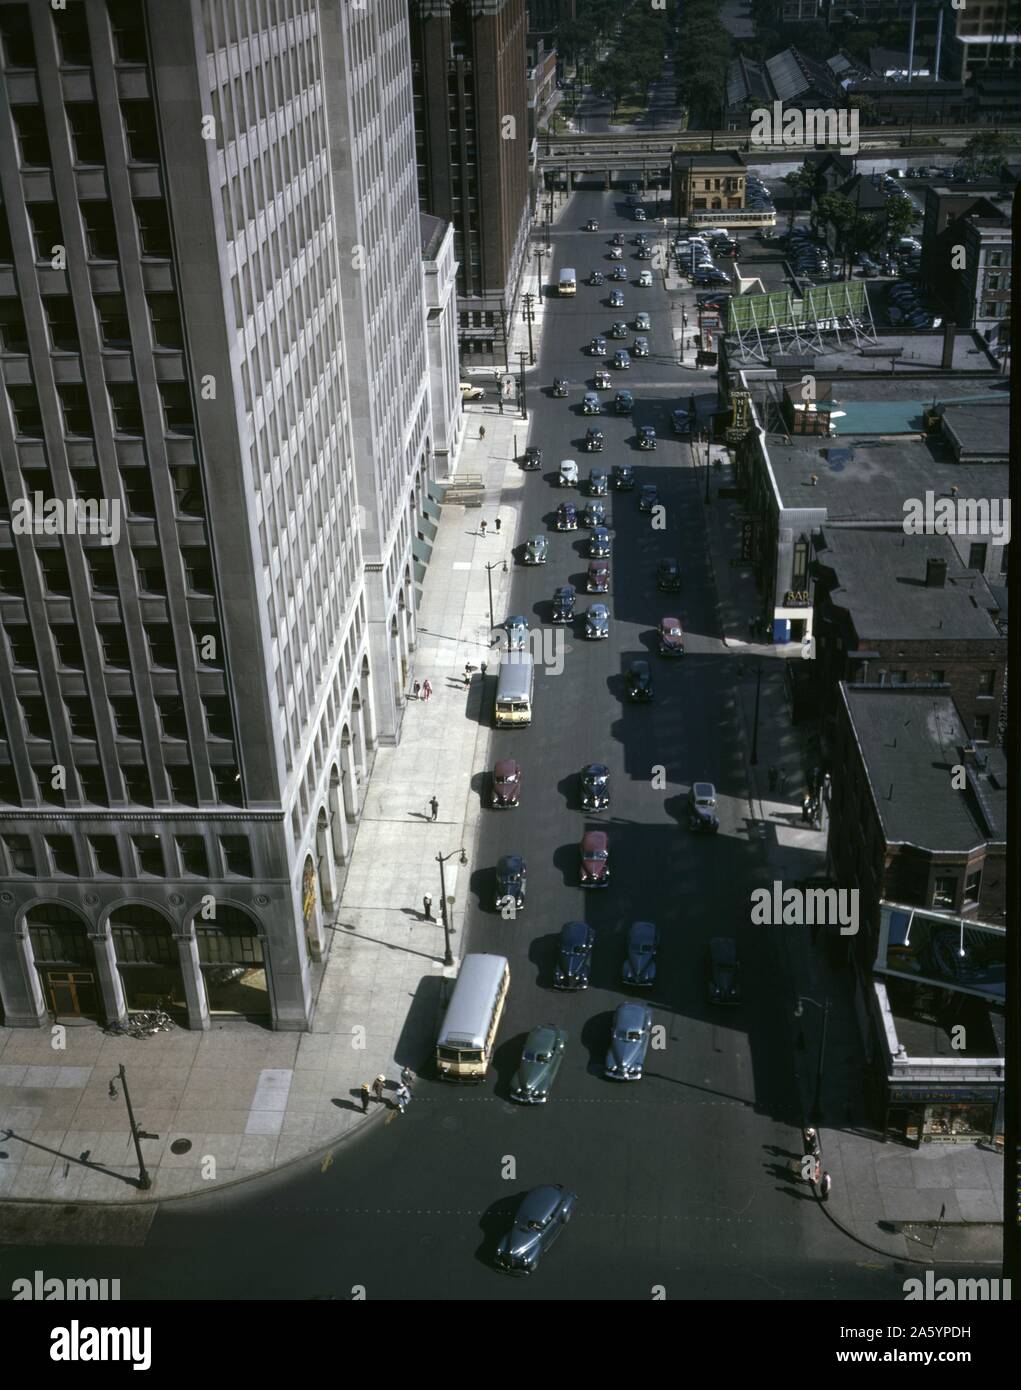 Photographie de la circulation de l'après-midi la Deuxième Avenue, Detroit, Michigan. Photographié par Arthur Siegel (1913-1978), photographe américain connu pour ses photographies expérimentales. Datée 1942 Banque D'Images